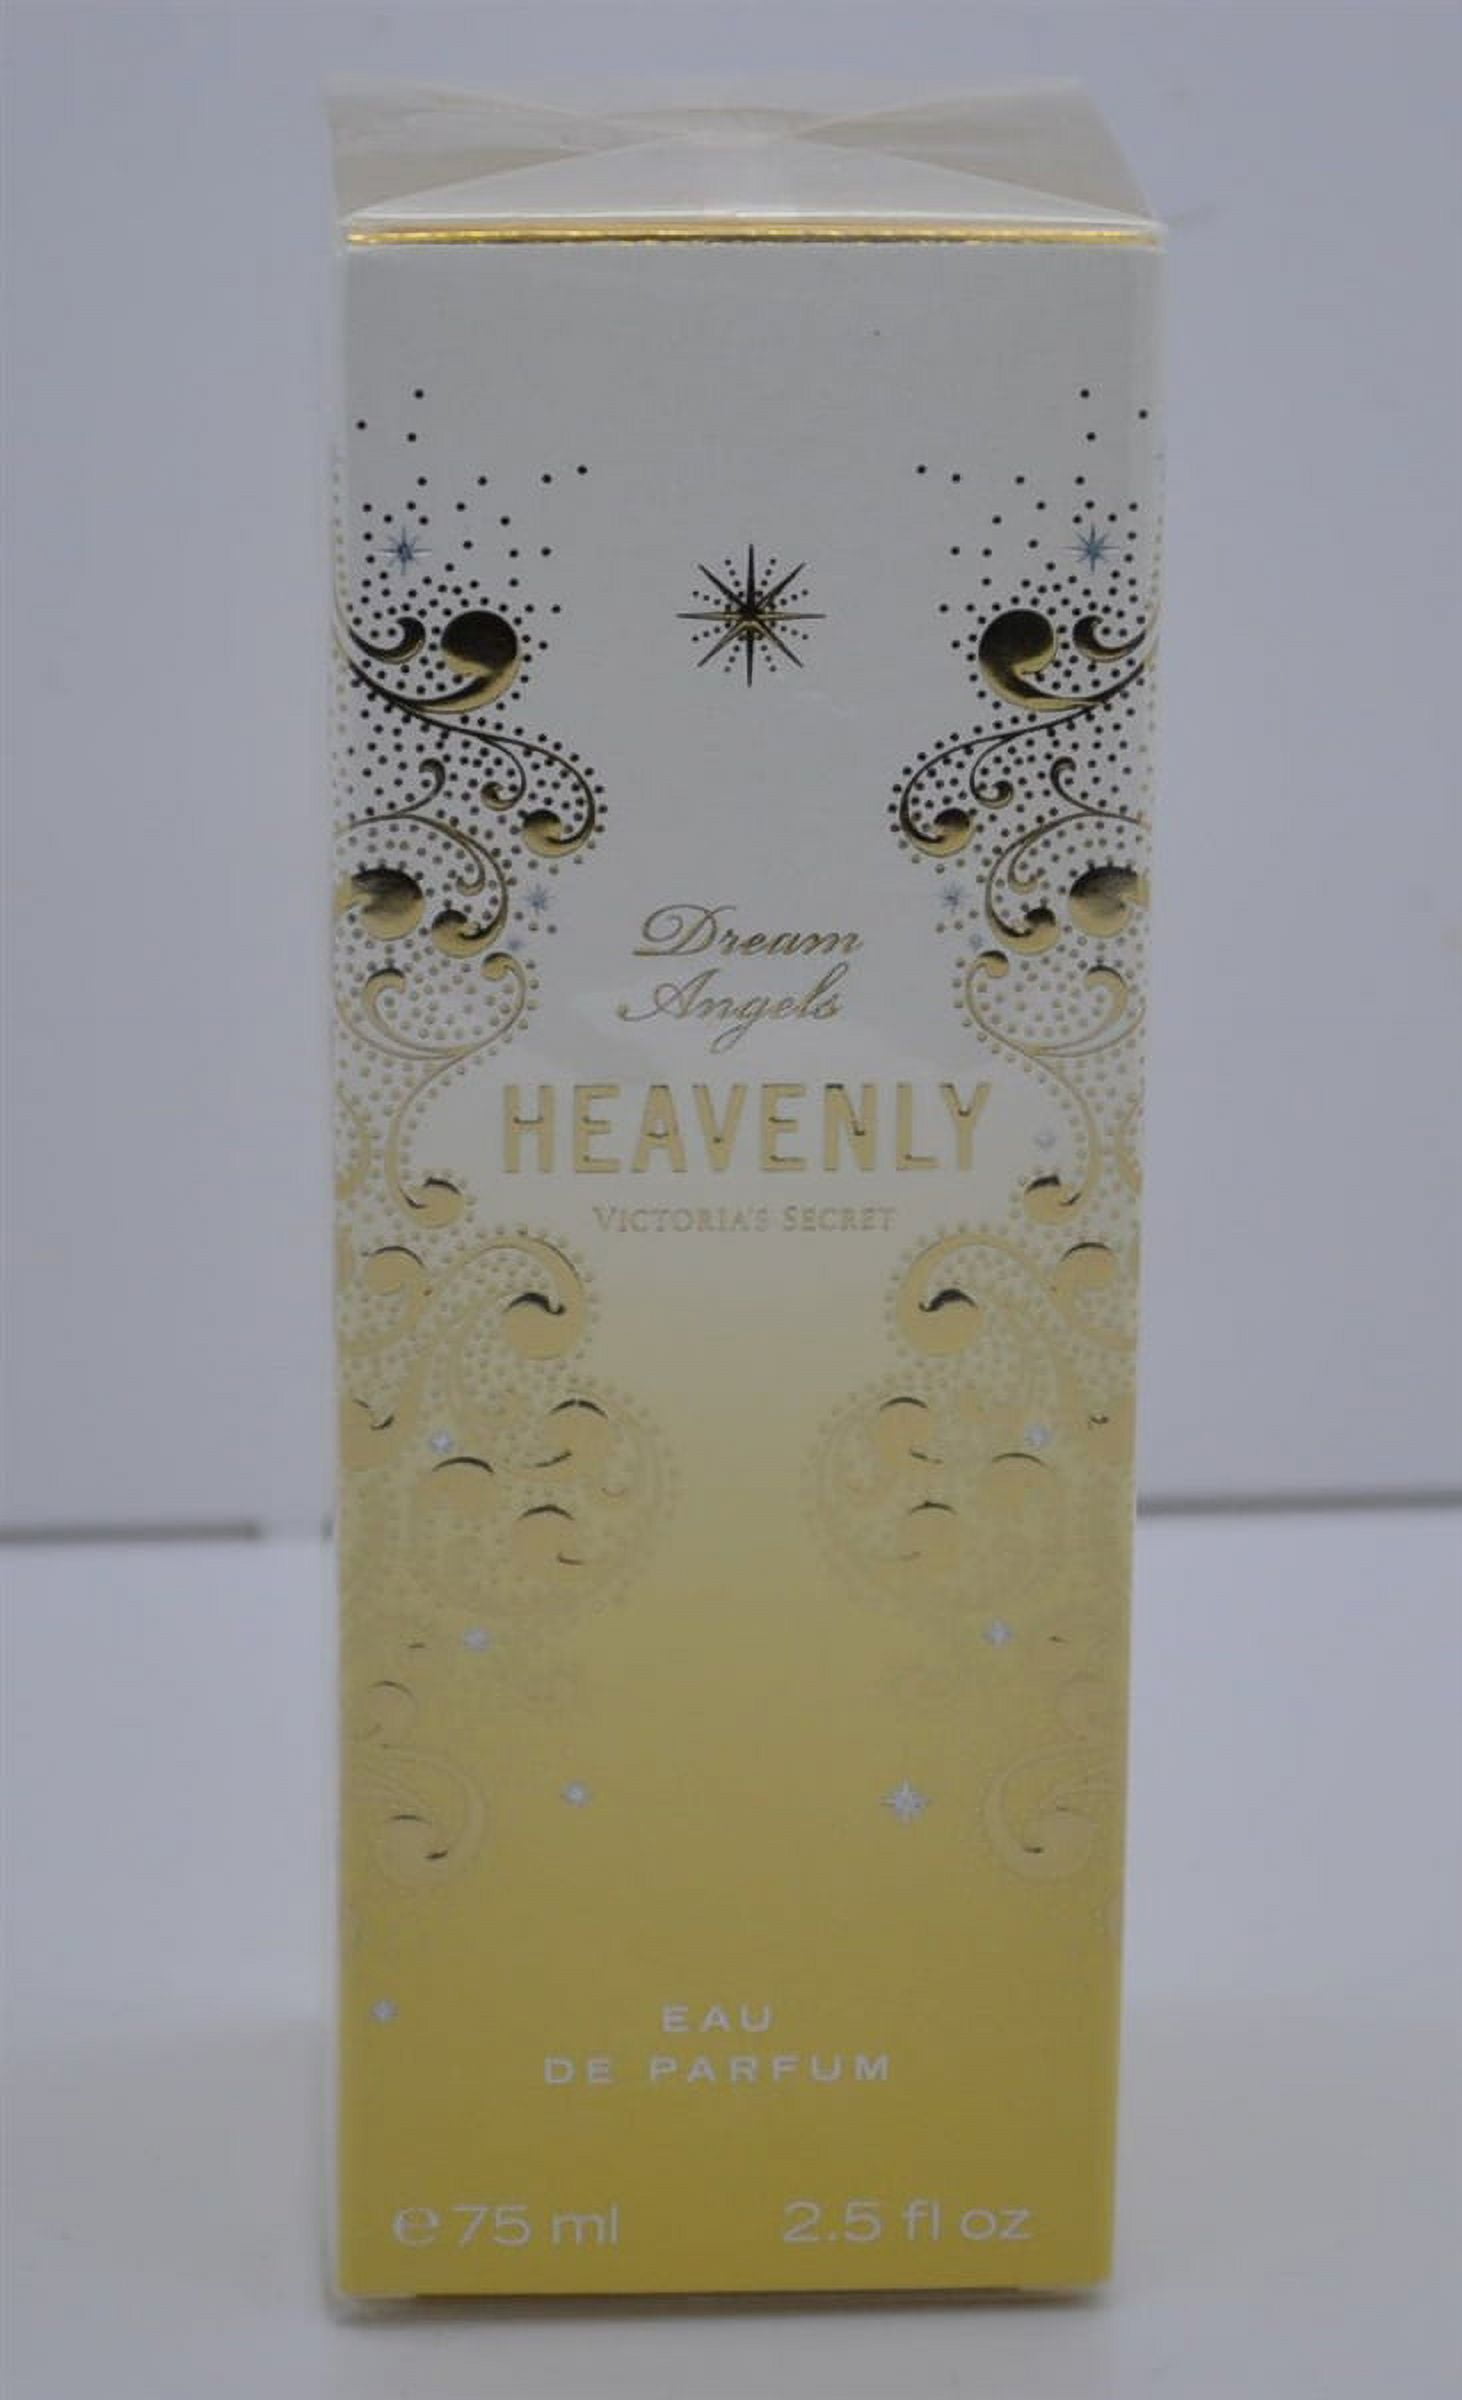 Victoria's Secret Dream Angels Heavenly Eau de Parfum 2.5 Oz